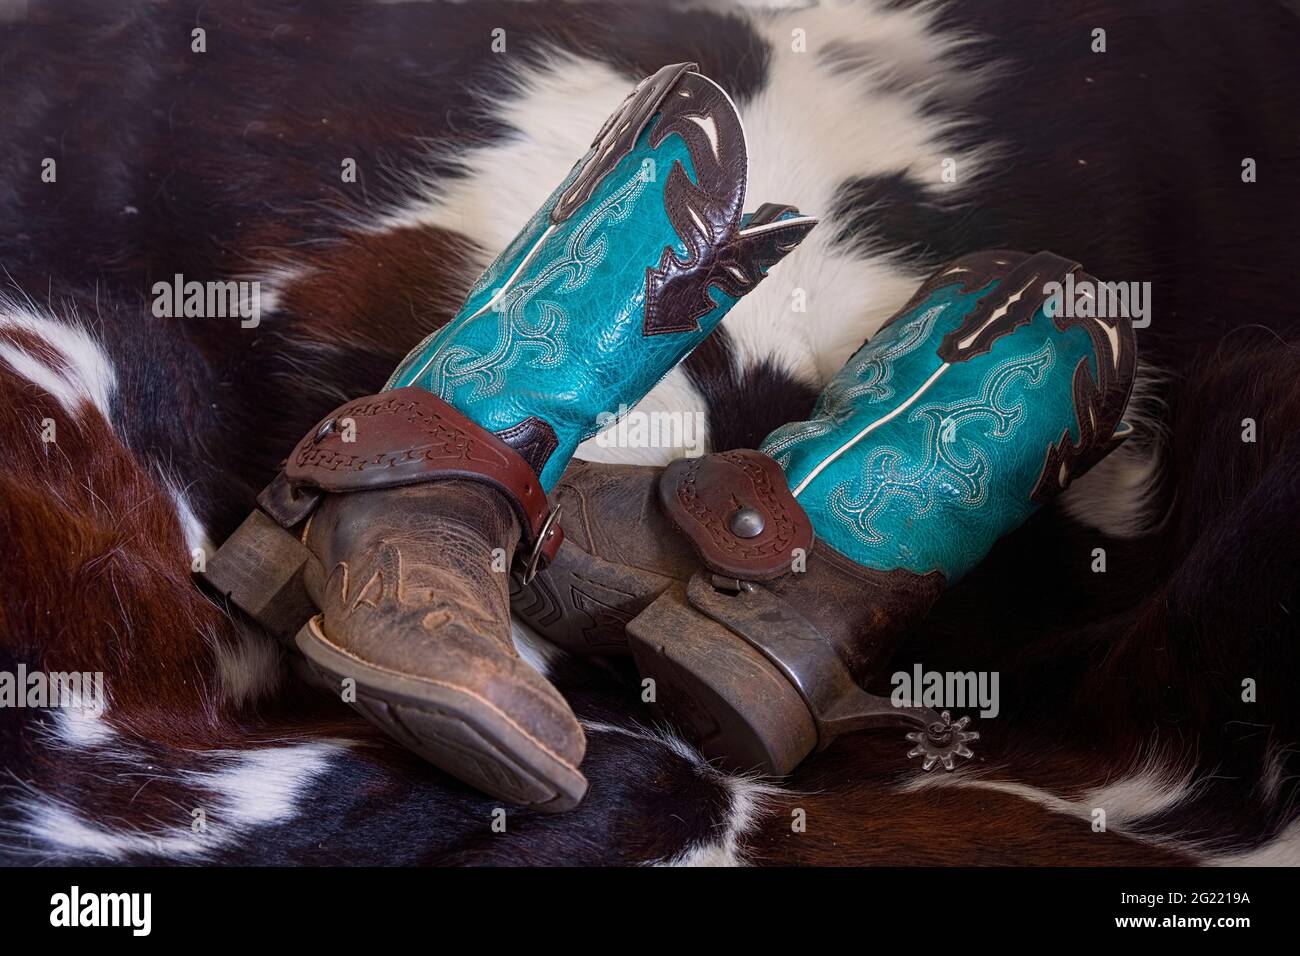 Hübsche Stiefel für ein Cowgirl in Blau und Braun mit aufwendigen Nähten und Mustern auf einem gemusterten Rindslederteppich. Stockfoto